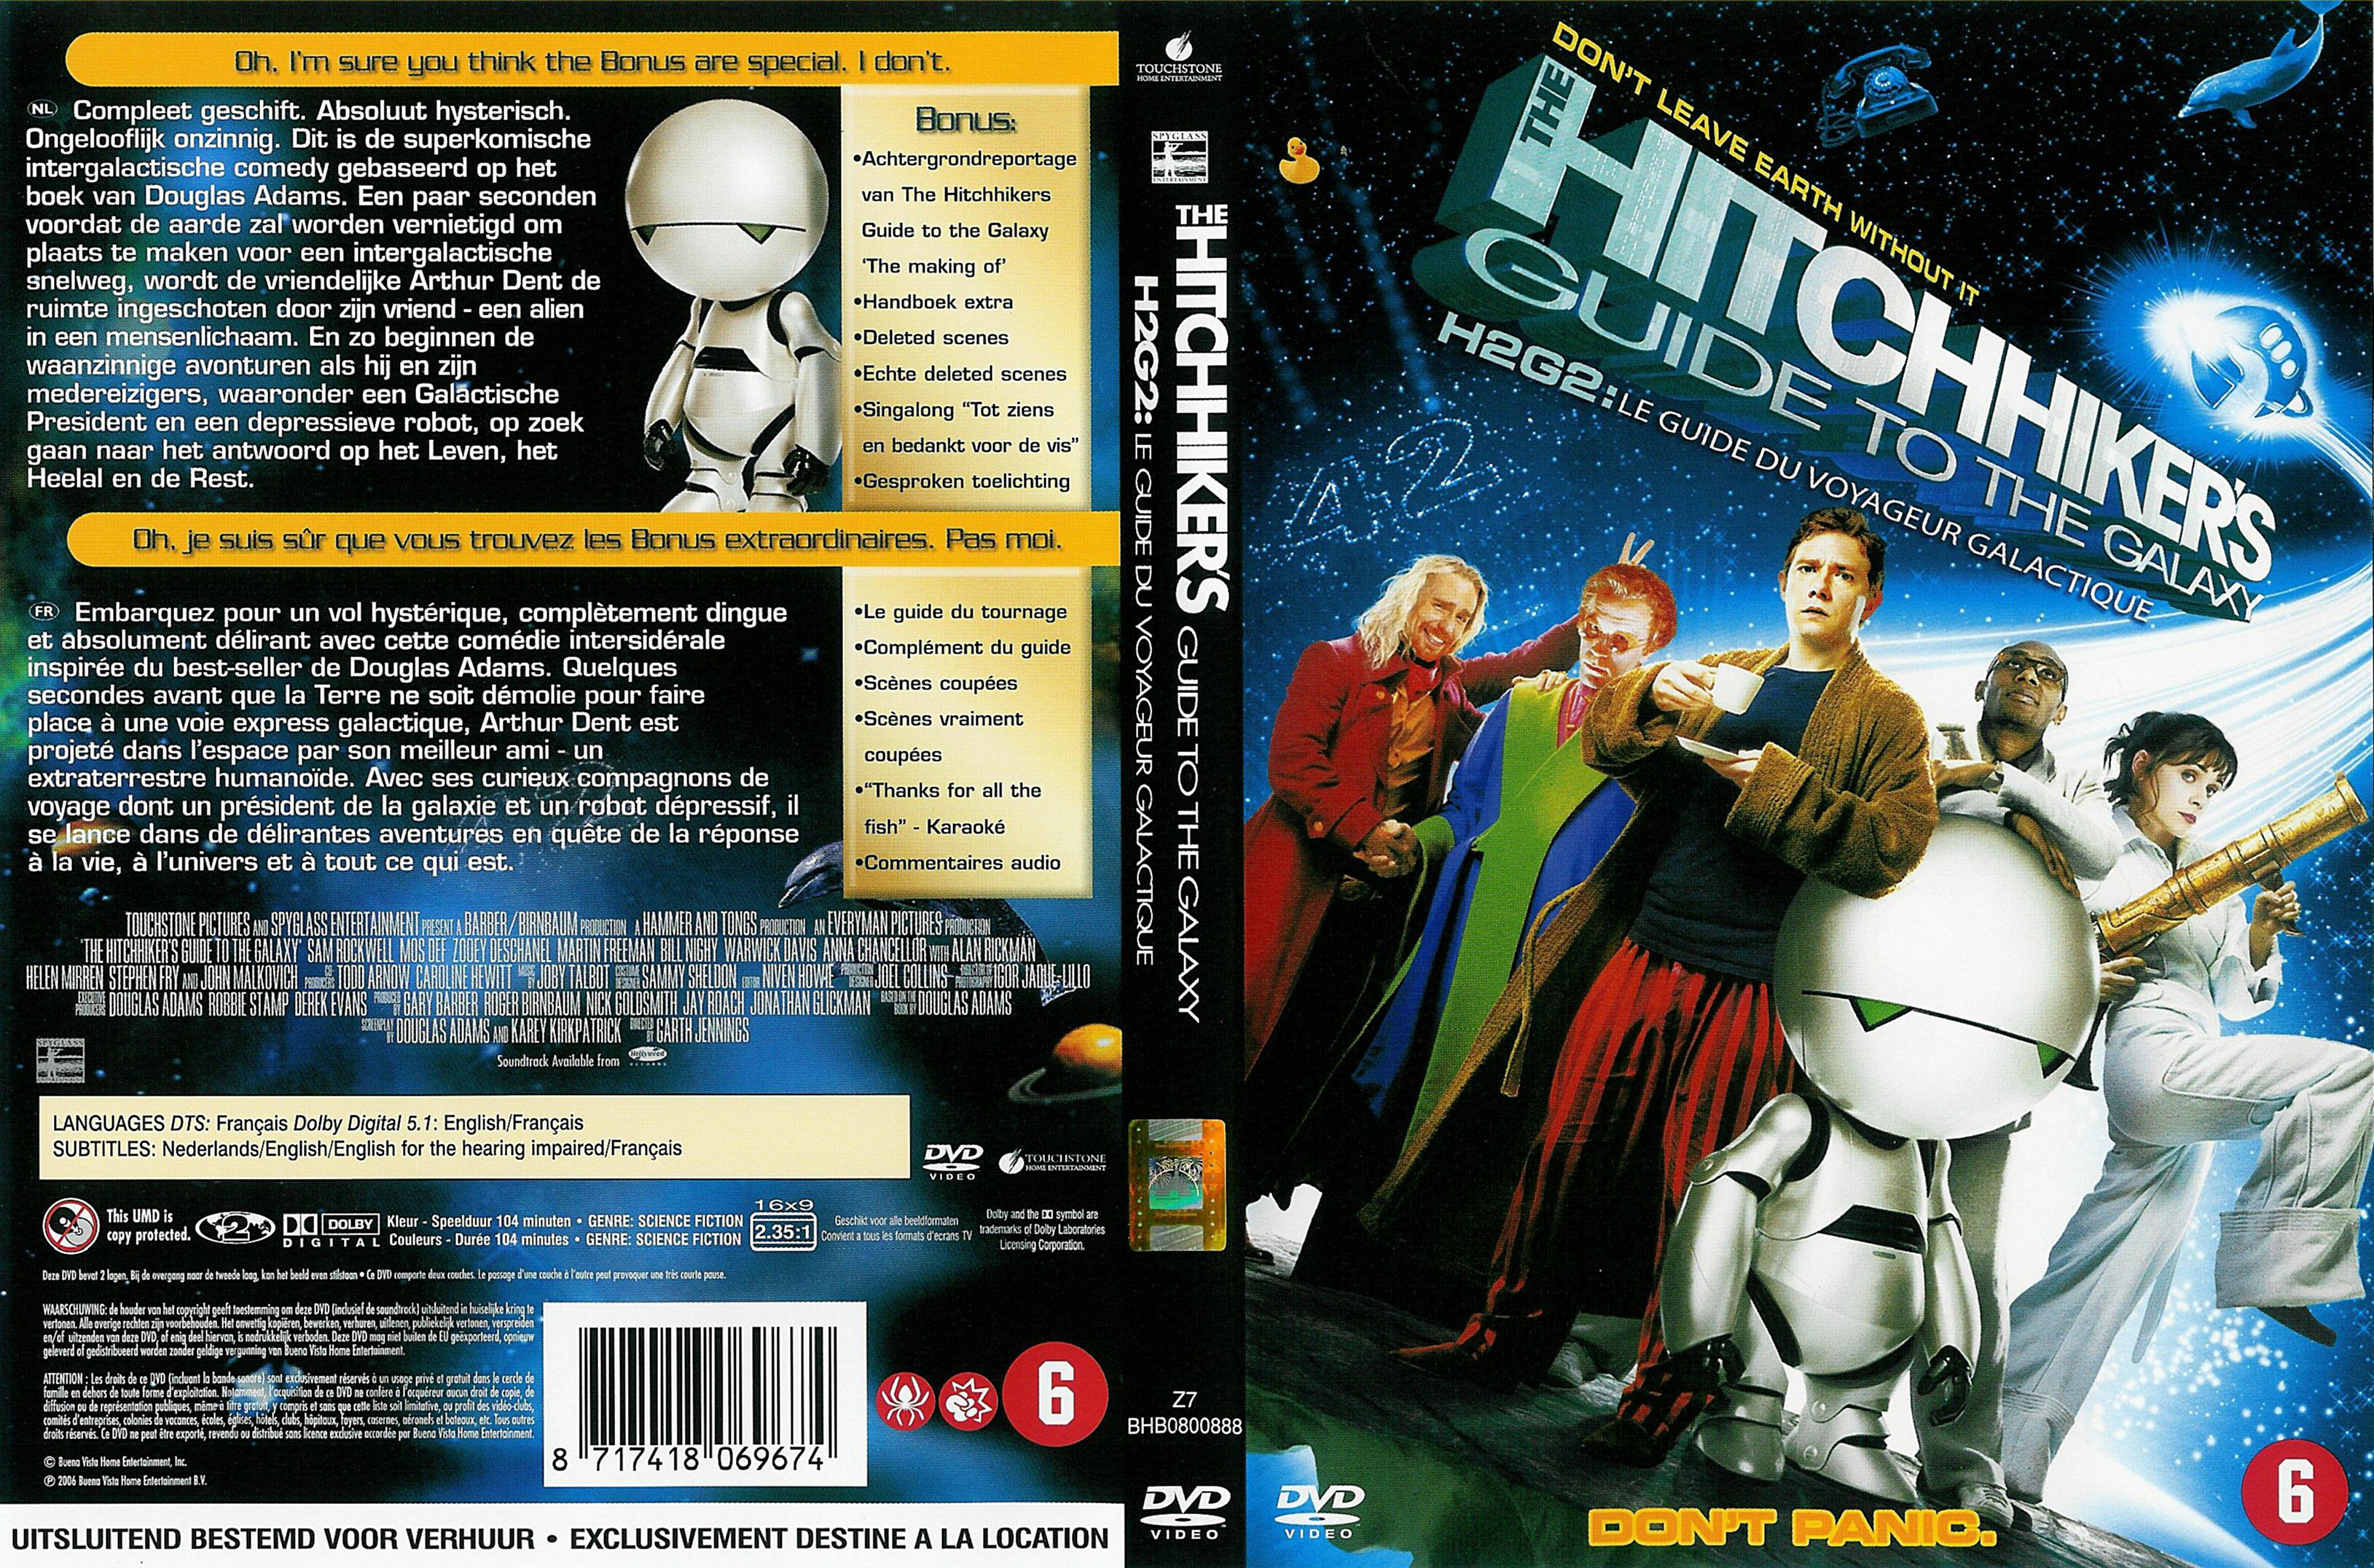 Jaquette DVD H2G2 le guide du voyageur galactique v2